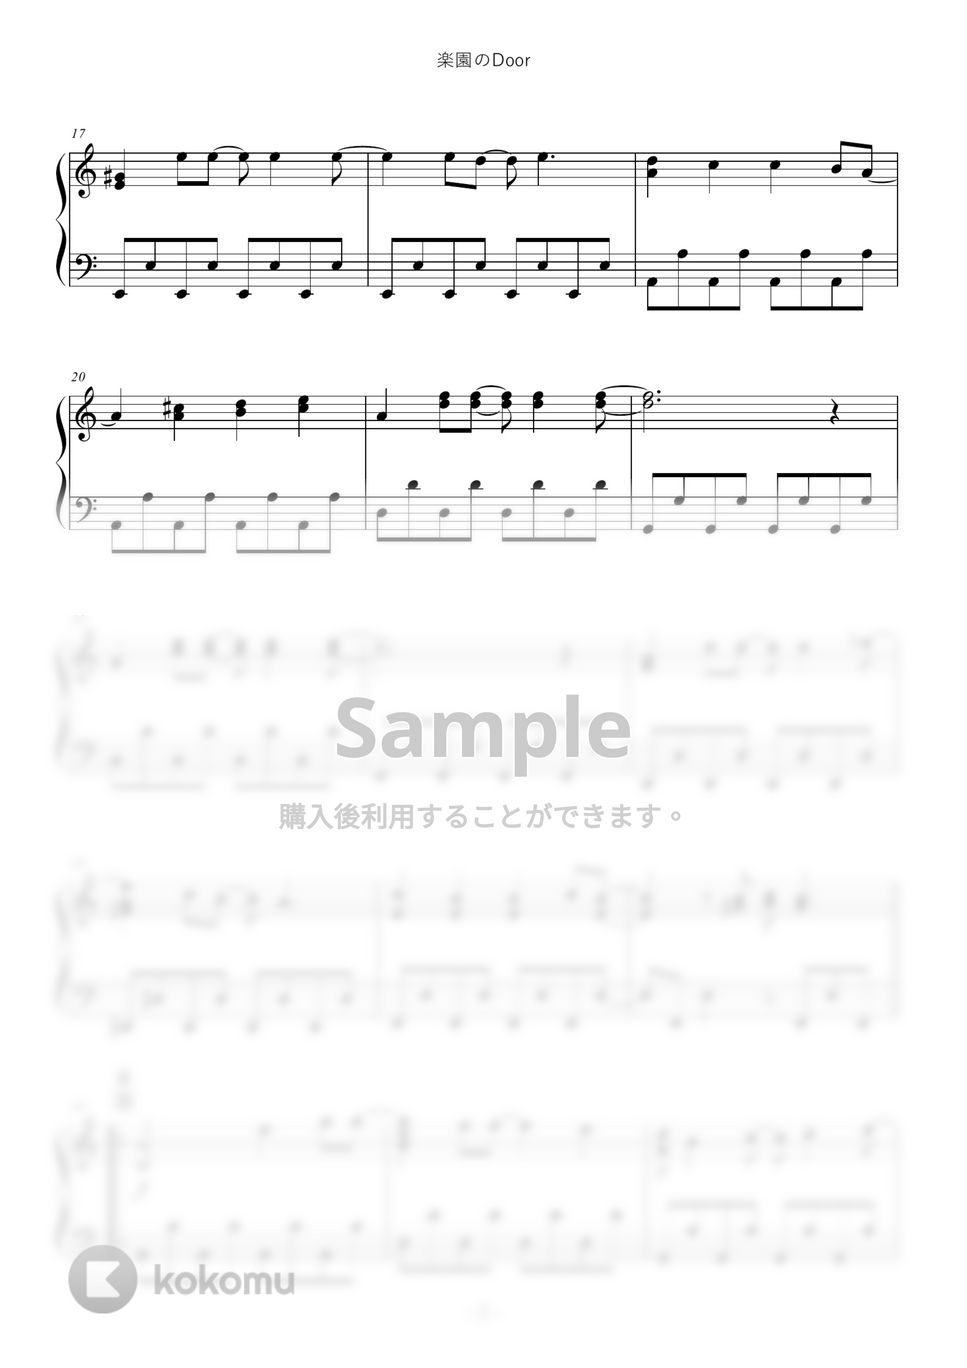 南野陽子 - 楽園のDoor by ABIA Music